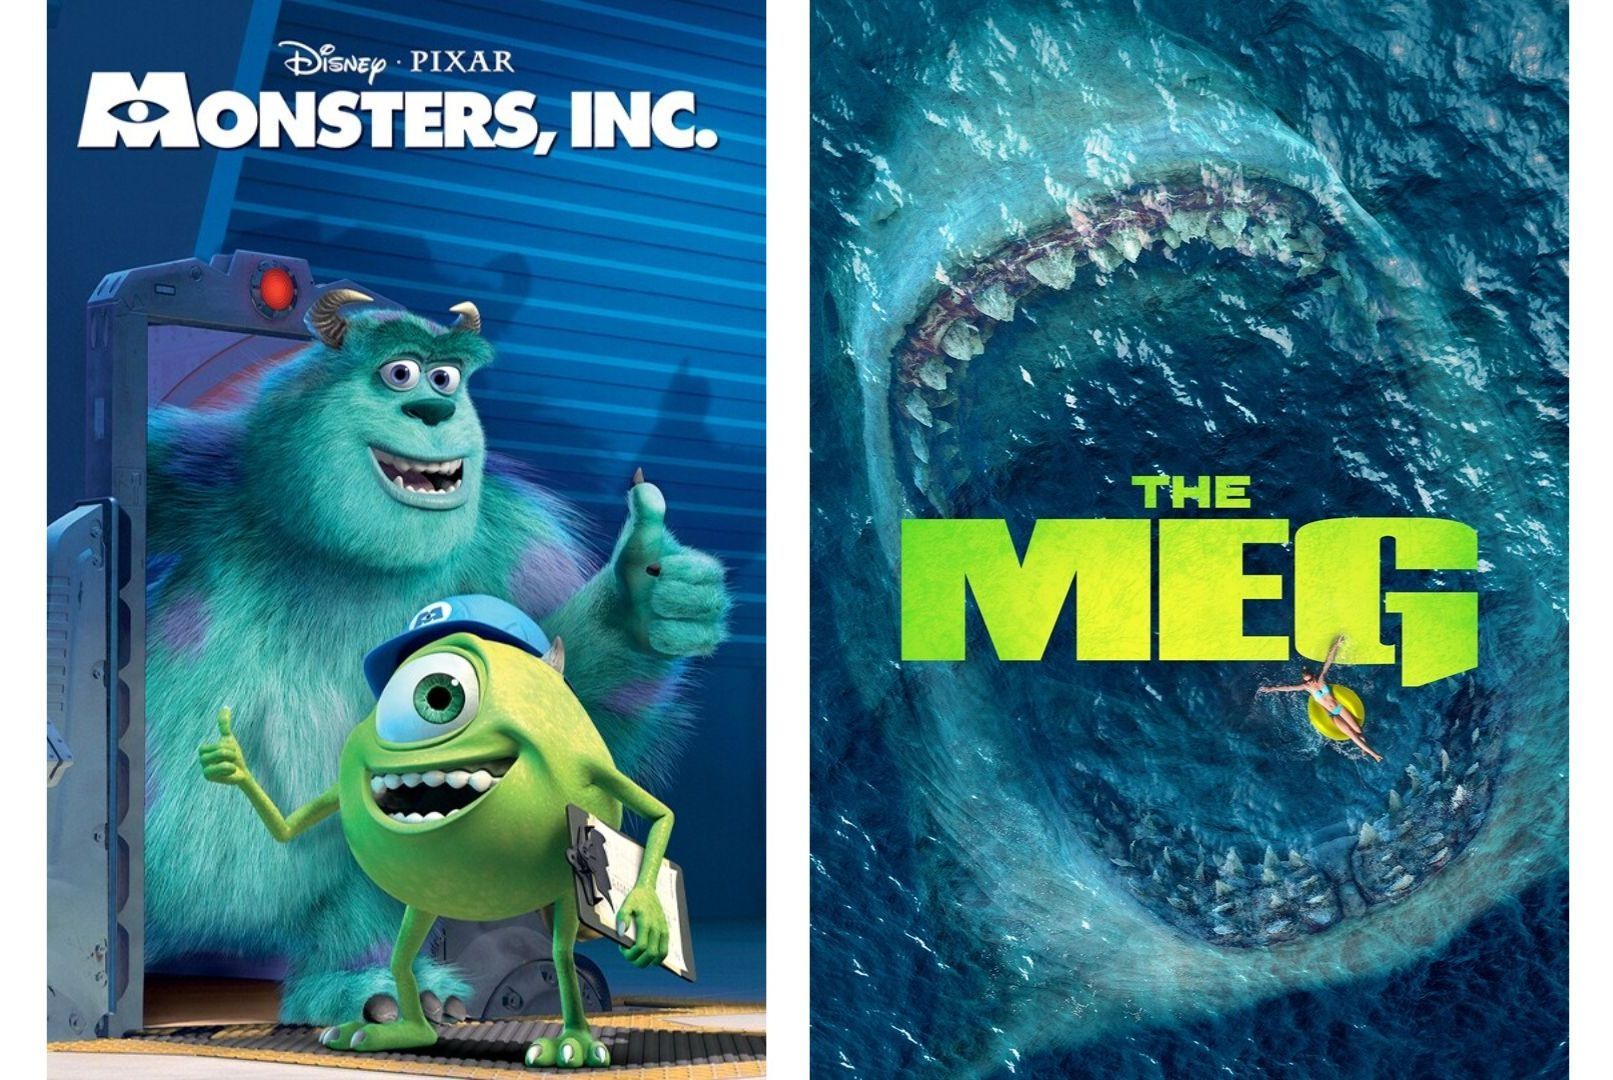 Monsters, INC | The Meg